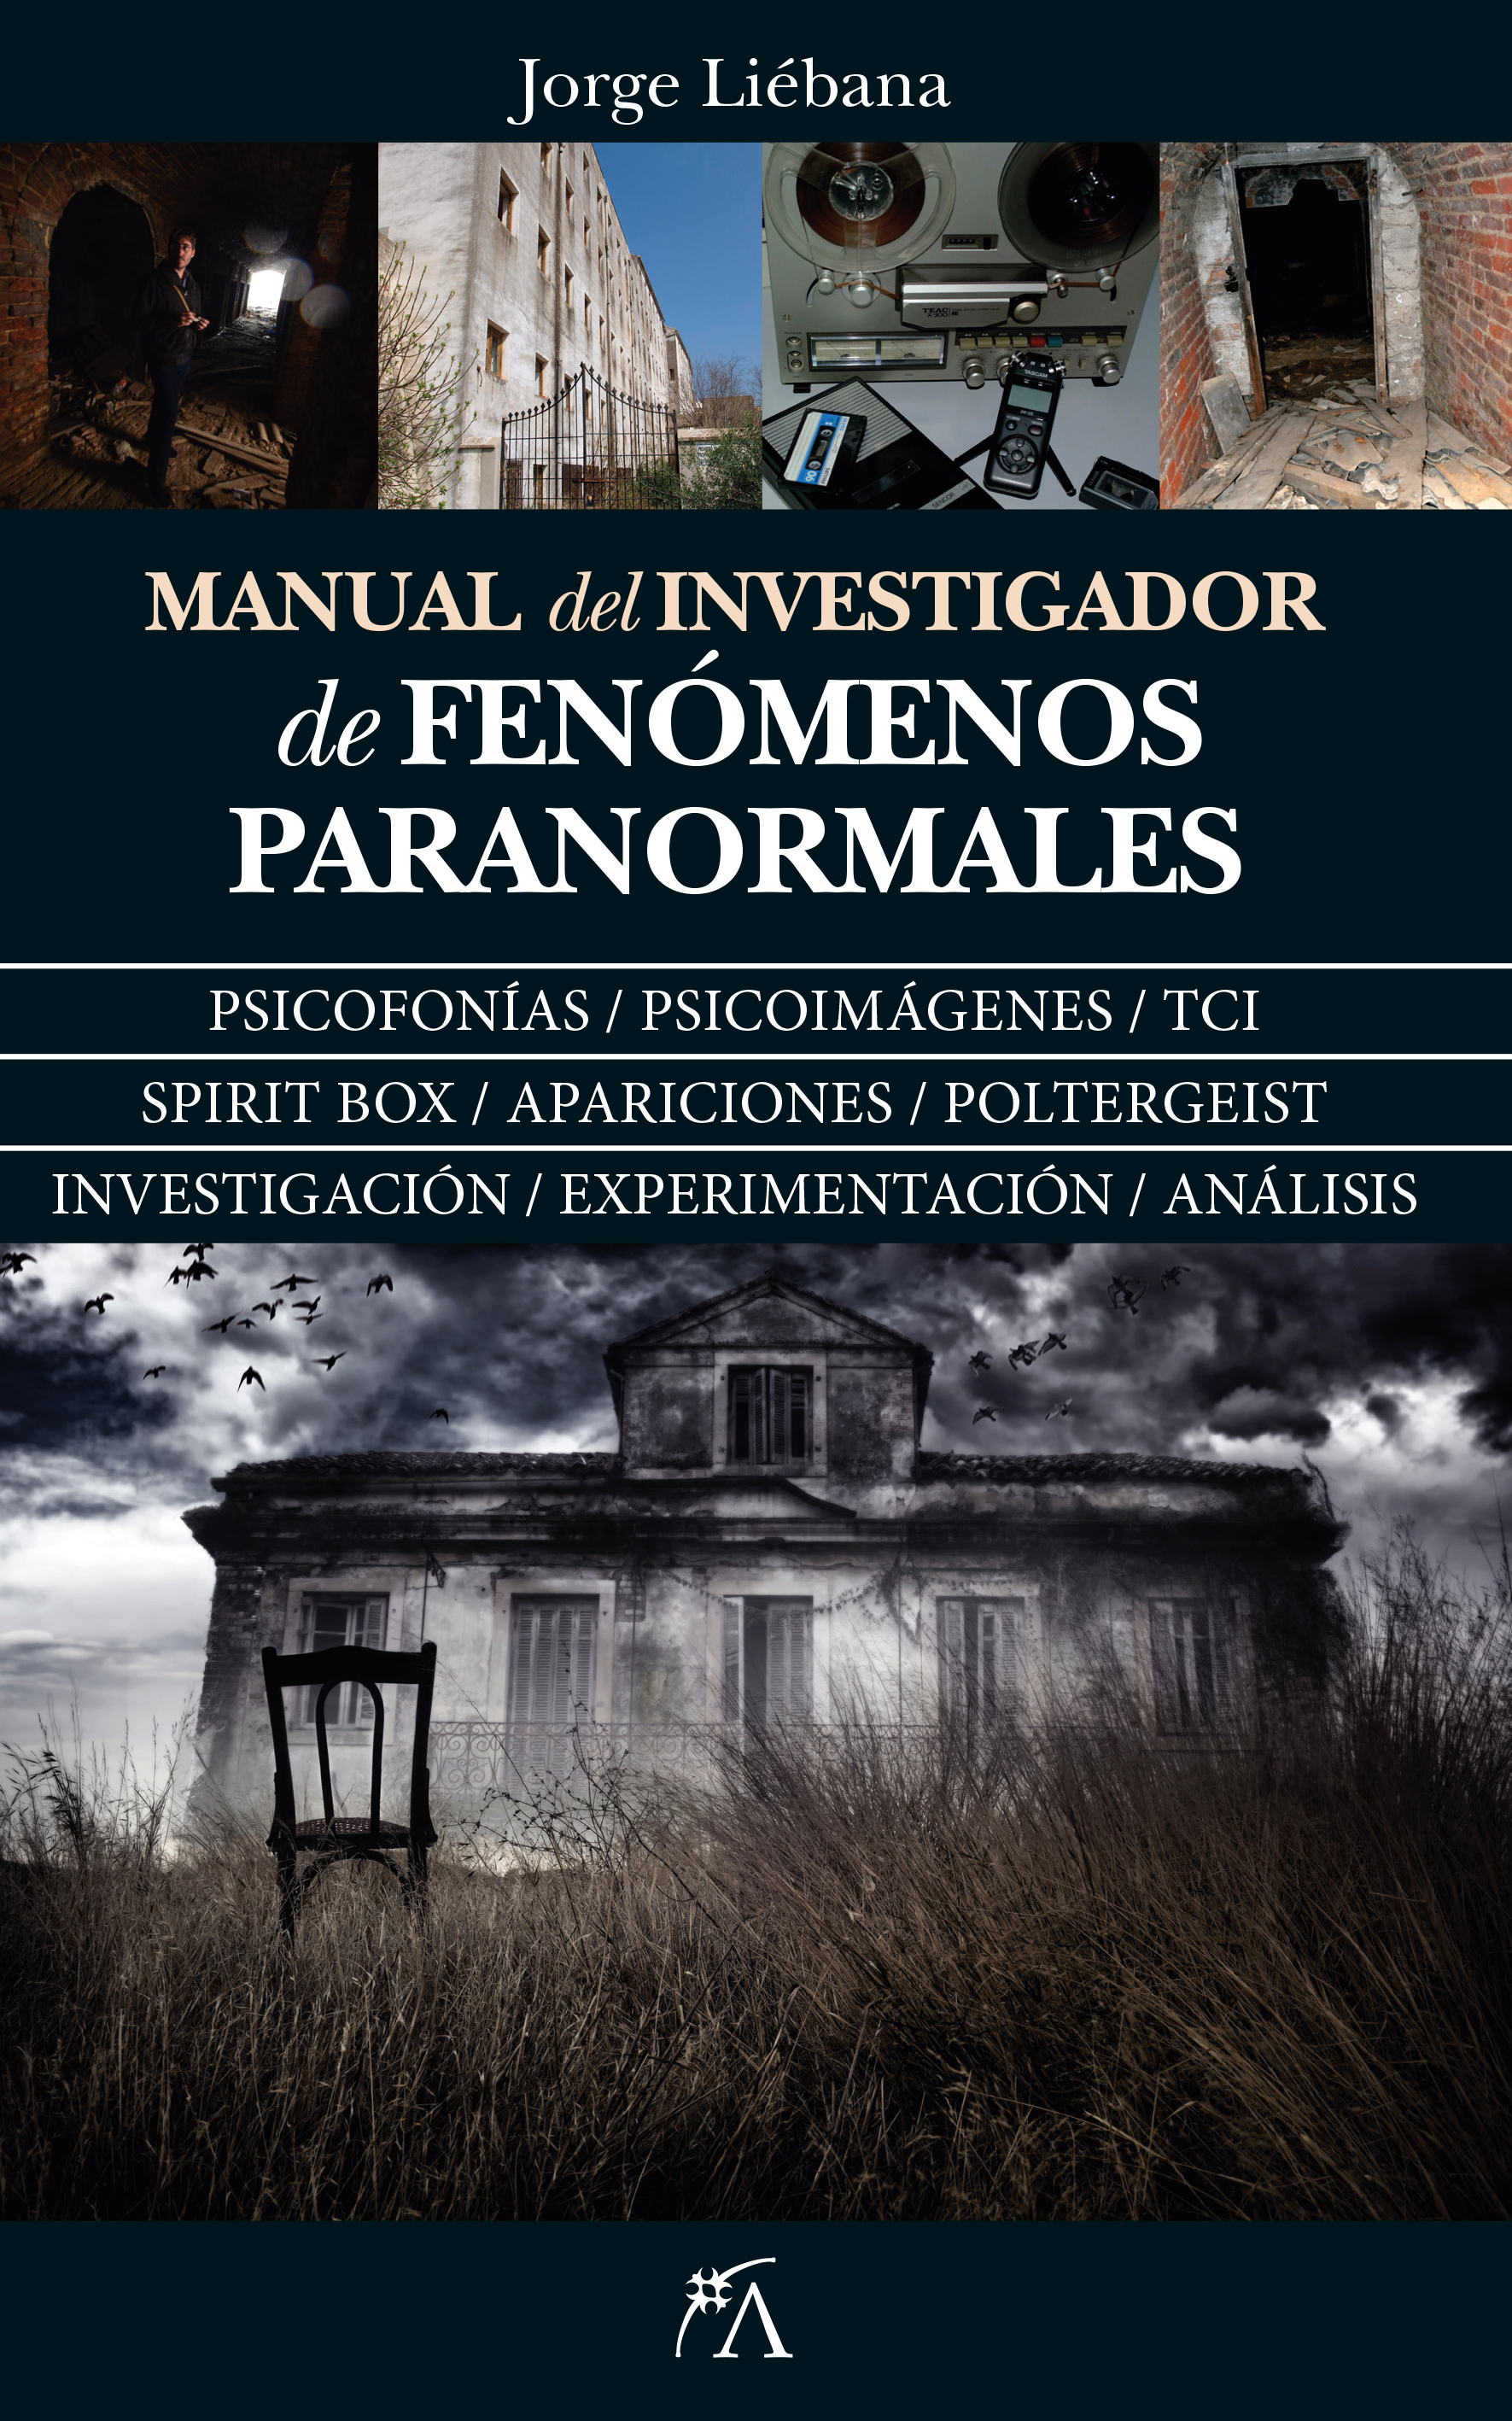 Honorable vestir ciclo Manual del investigador de fenómenos paranormales - La tienda de libros